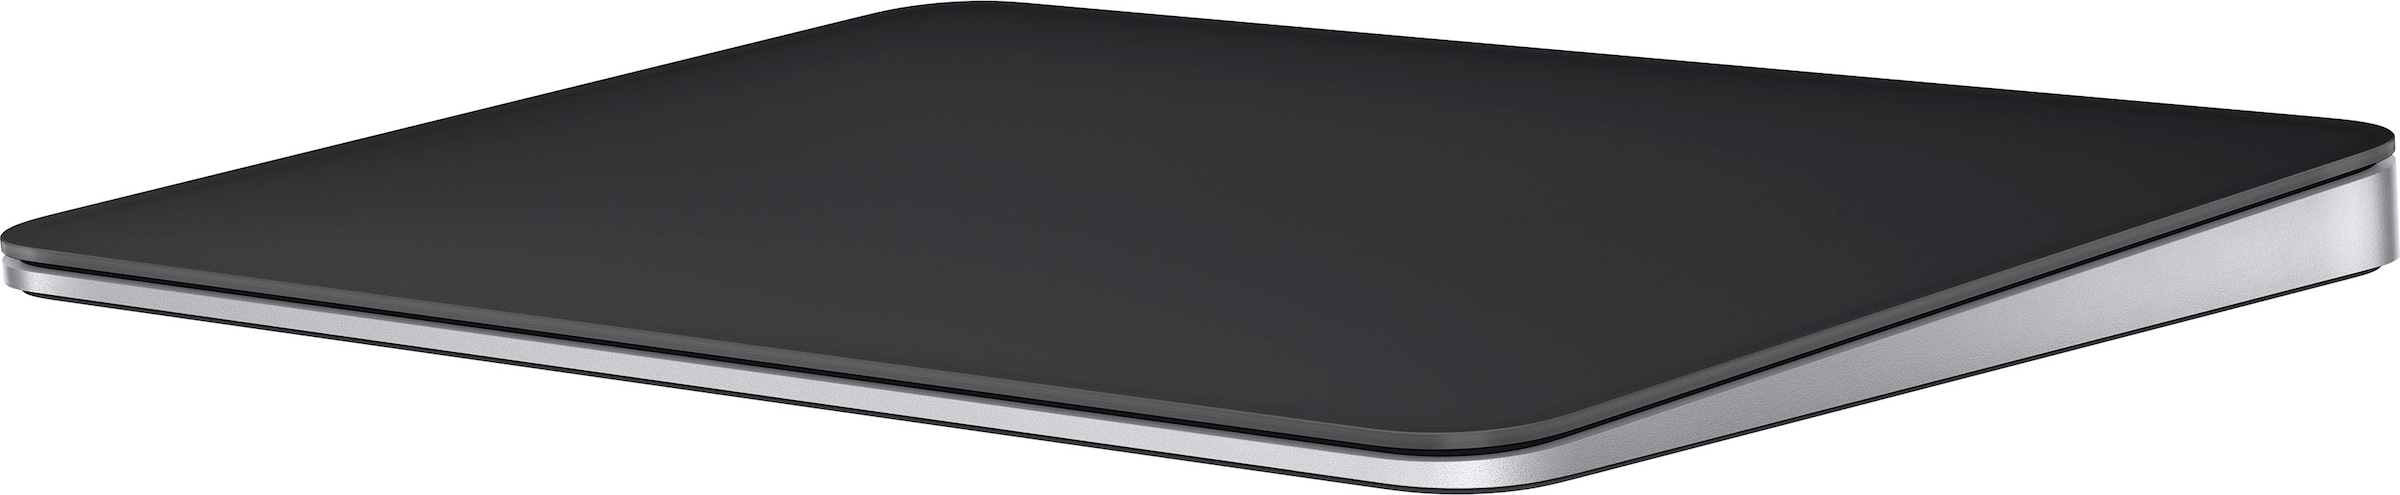 Apple Apple-Tastatur »Magic Trackpad«, (Touchpad)